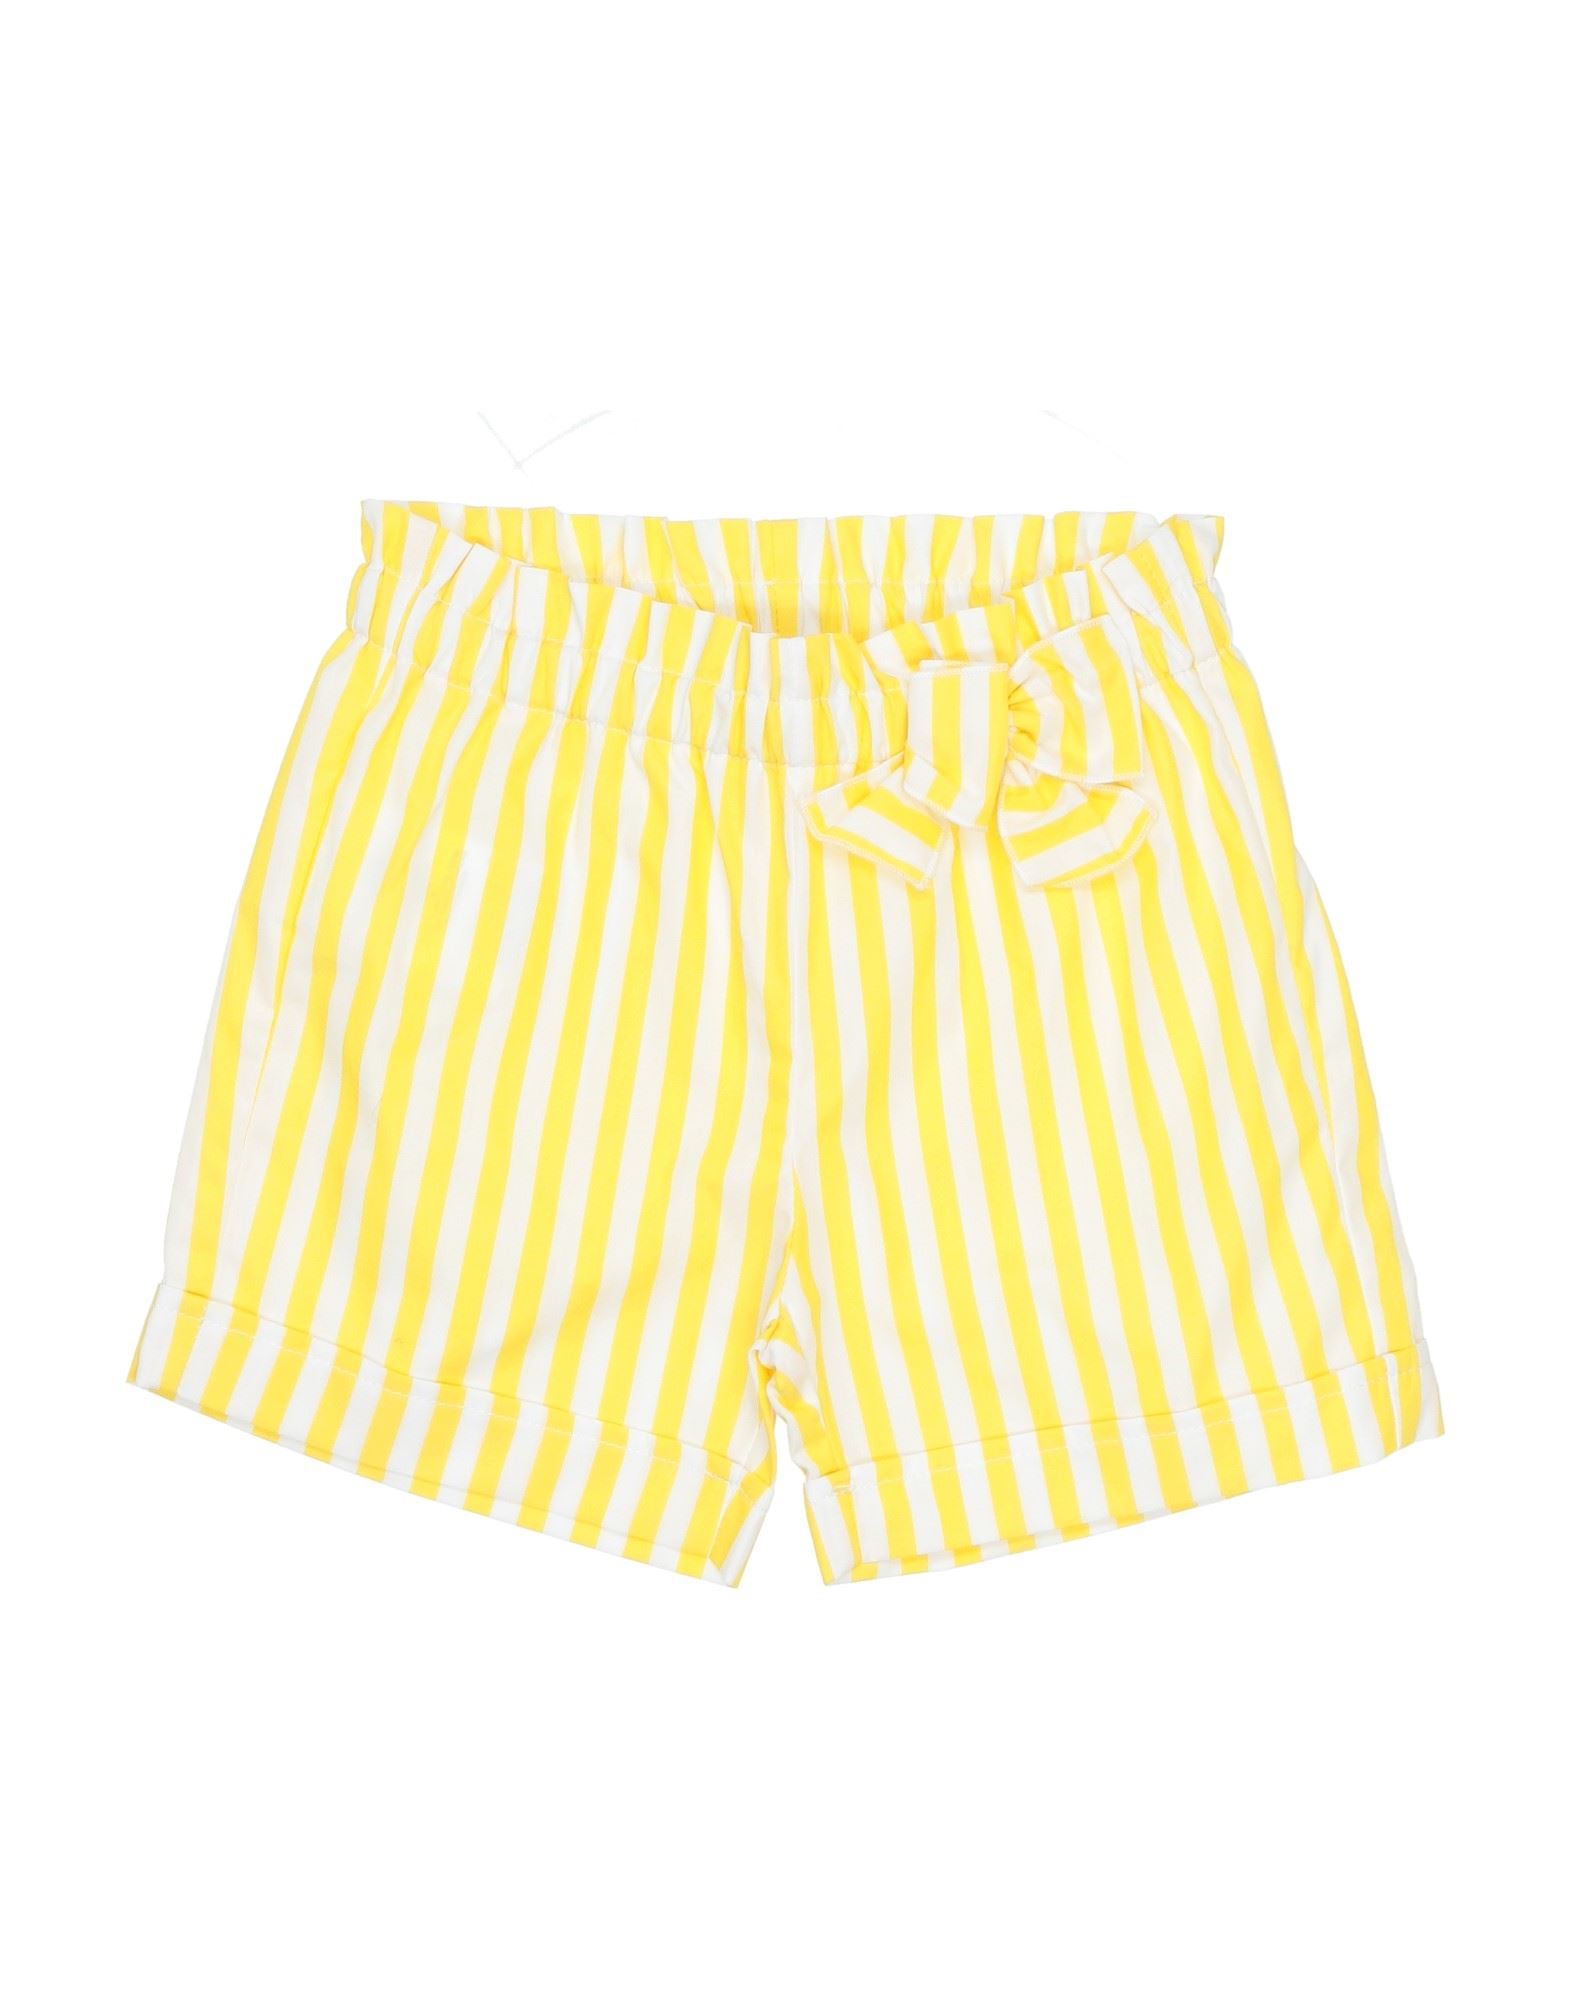 Aletta Kids' Shorts & Bermuda Shorts In Yellow